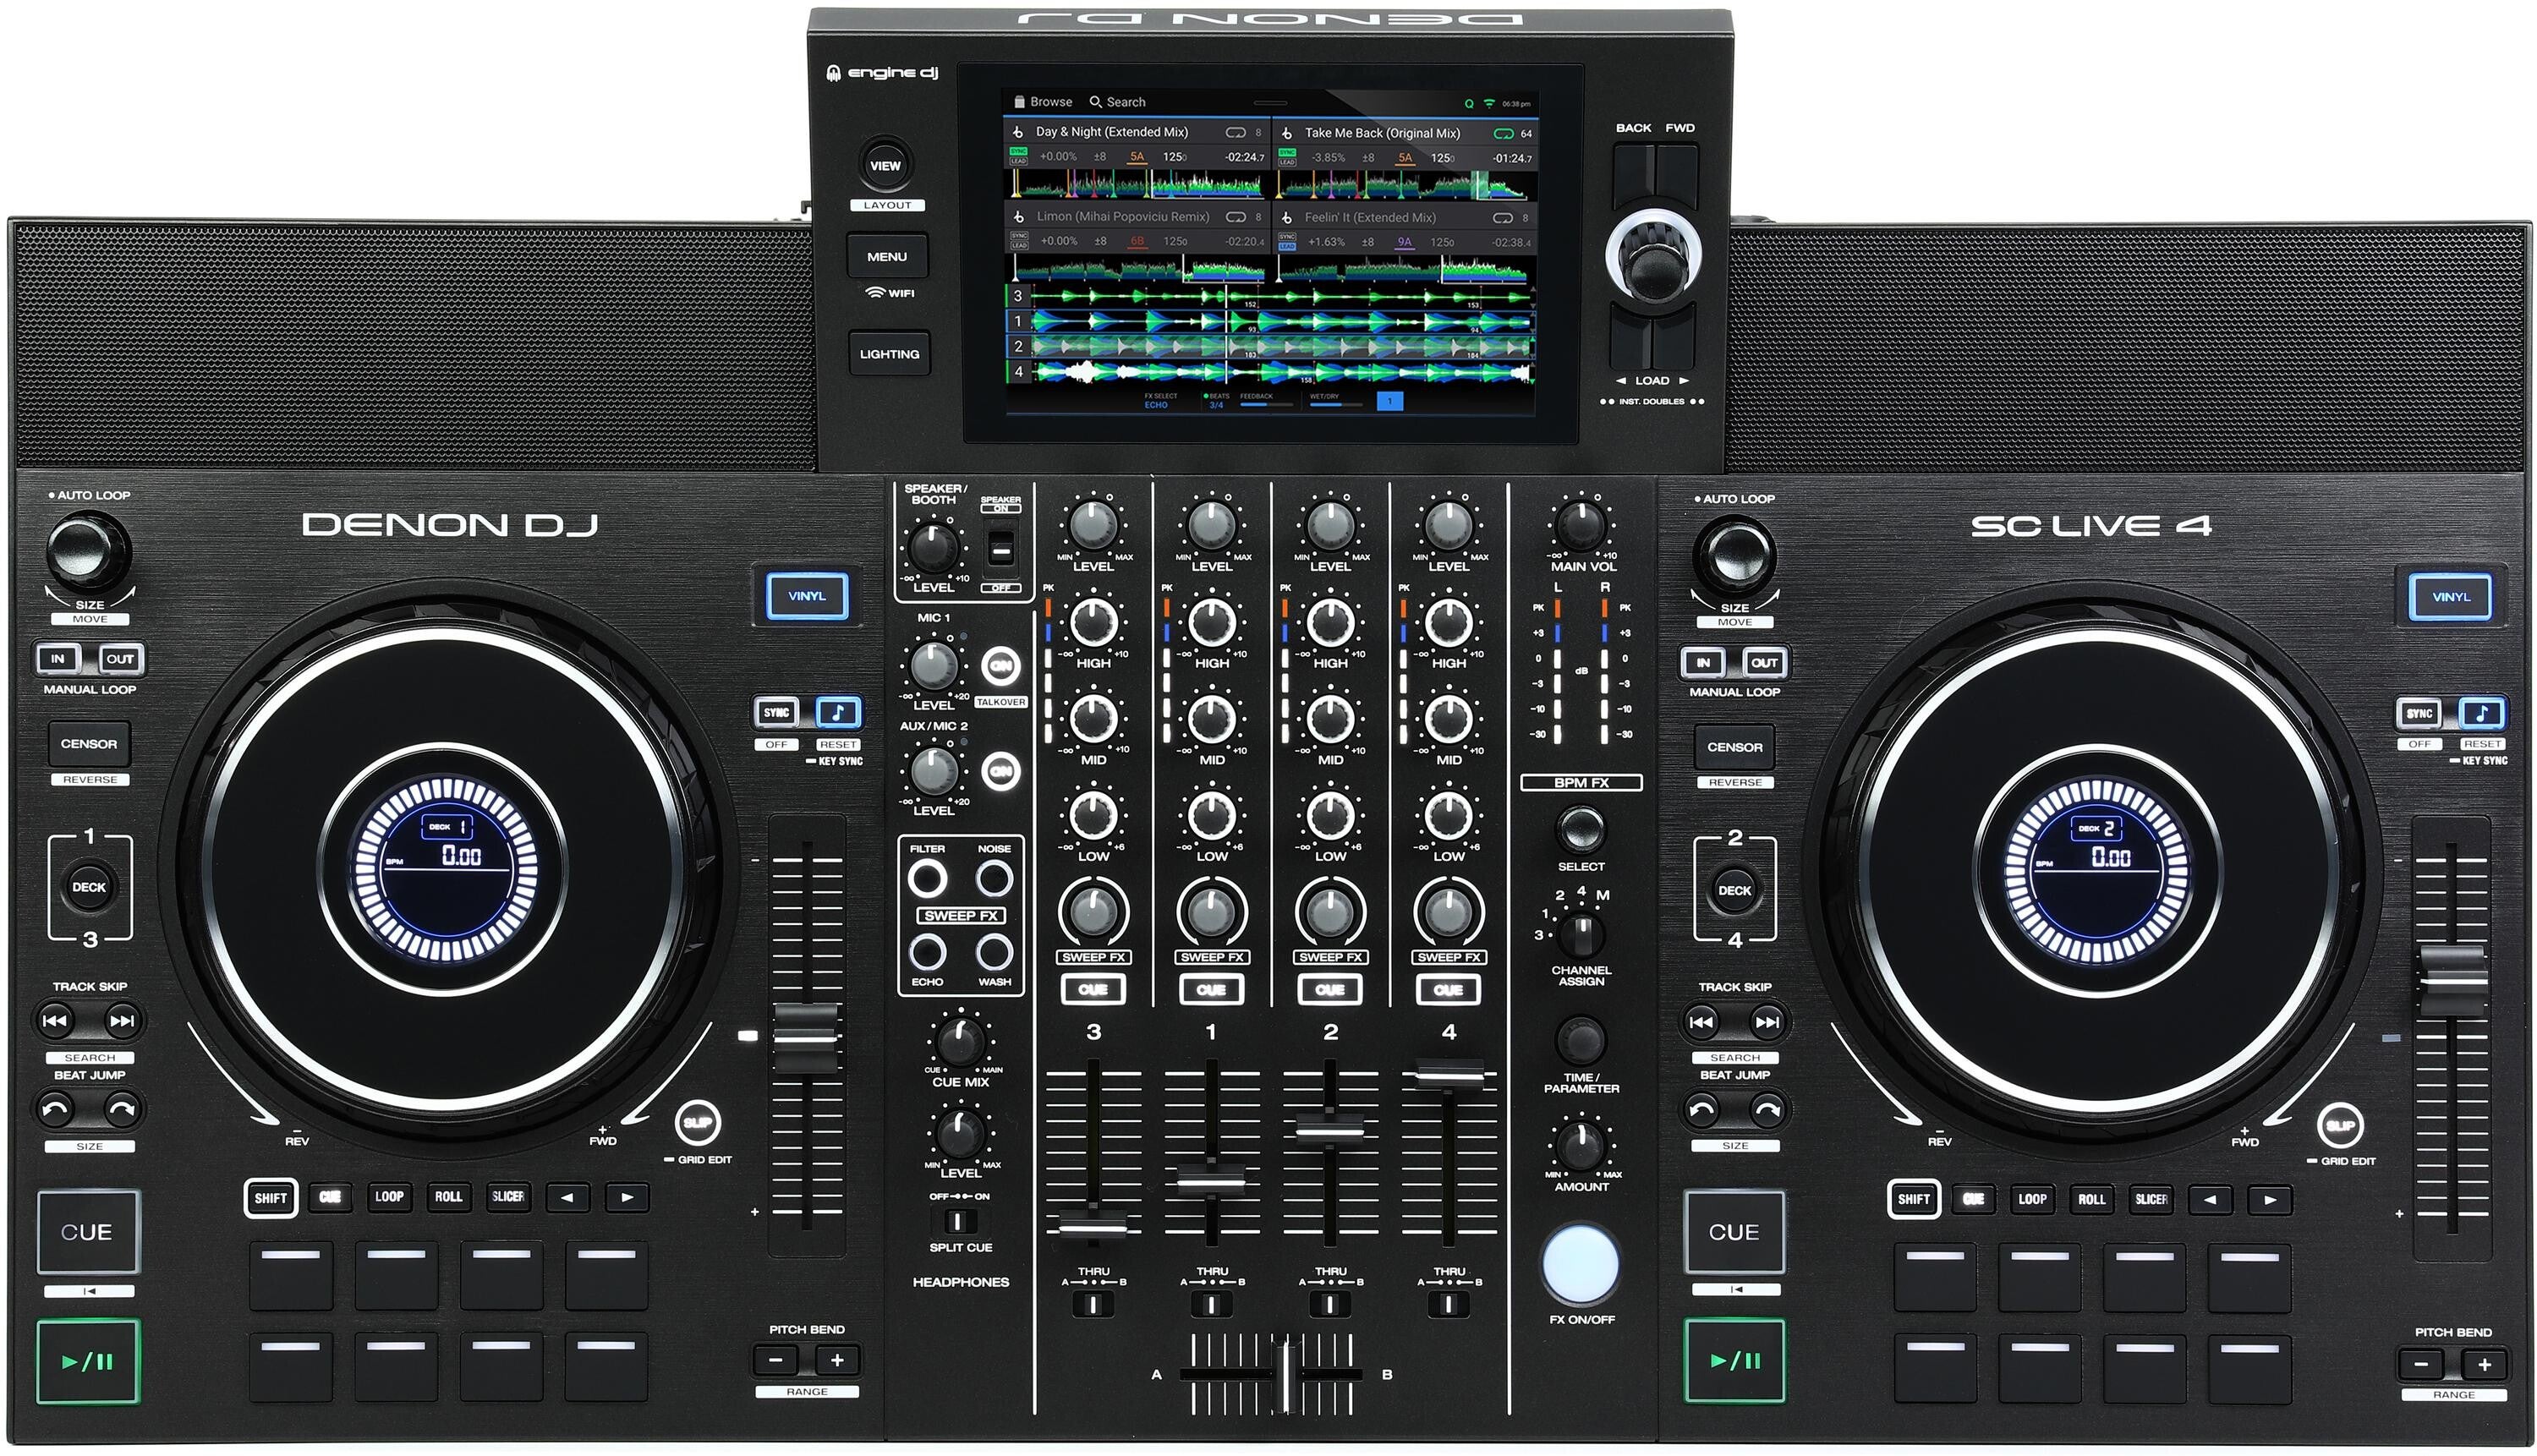 Denon DJ MCX8000 Stand alone DJ System and Serato Controller 